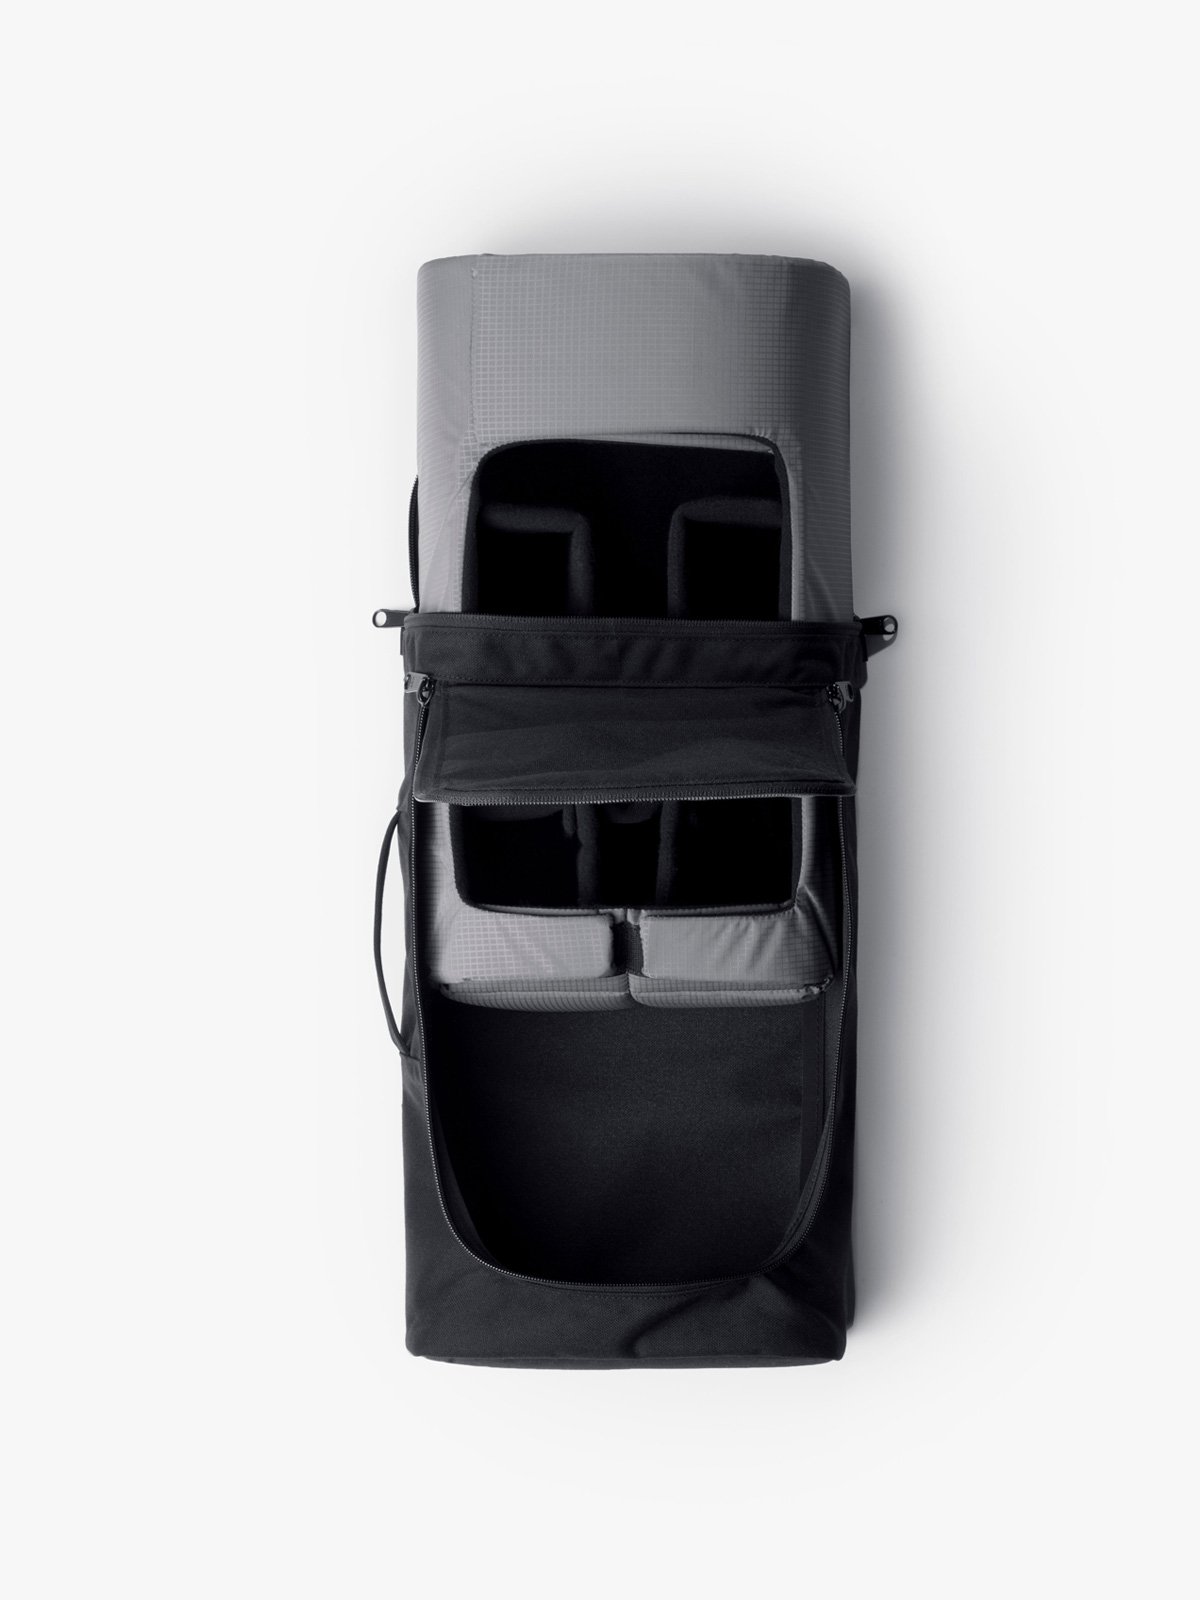 Capsule by Mission Workshop - Säänkestävät laukut ja tekniset vaatteet - San Francisco & Los Angeles - Rakennettu kestämään - ikuinen takuu